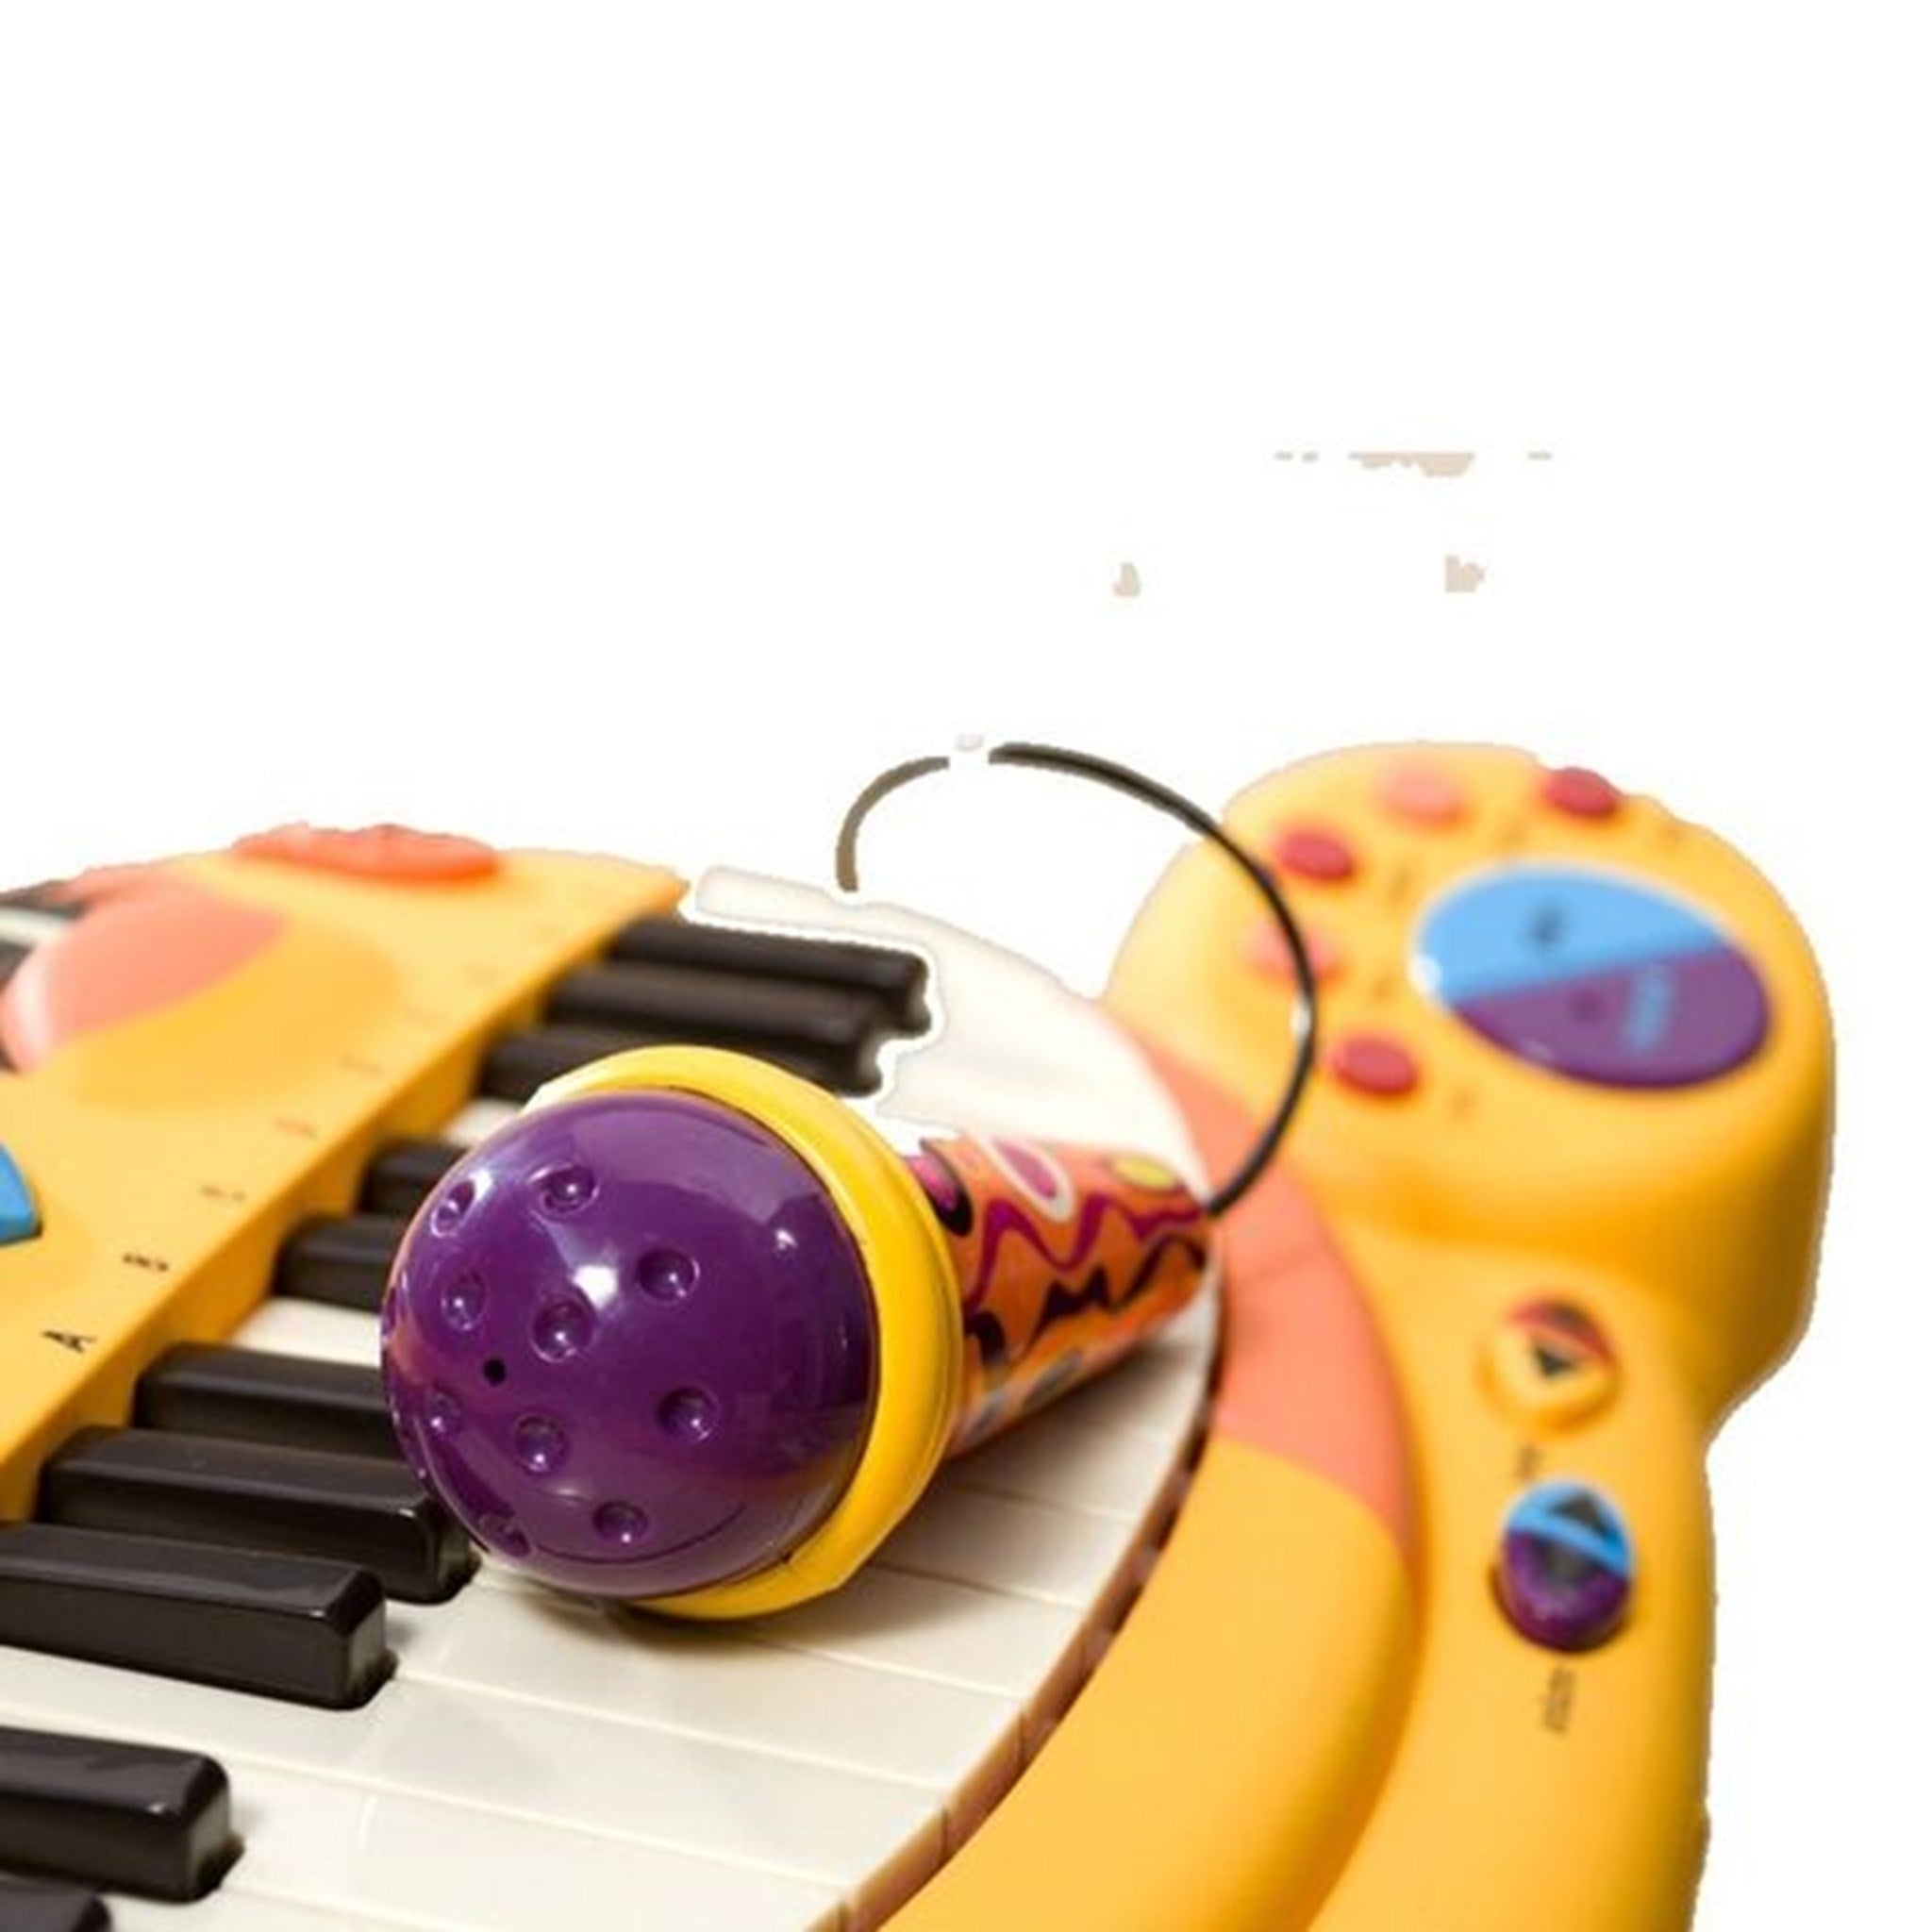 B-toys Meowsic Keyboard 2